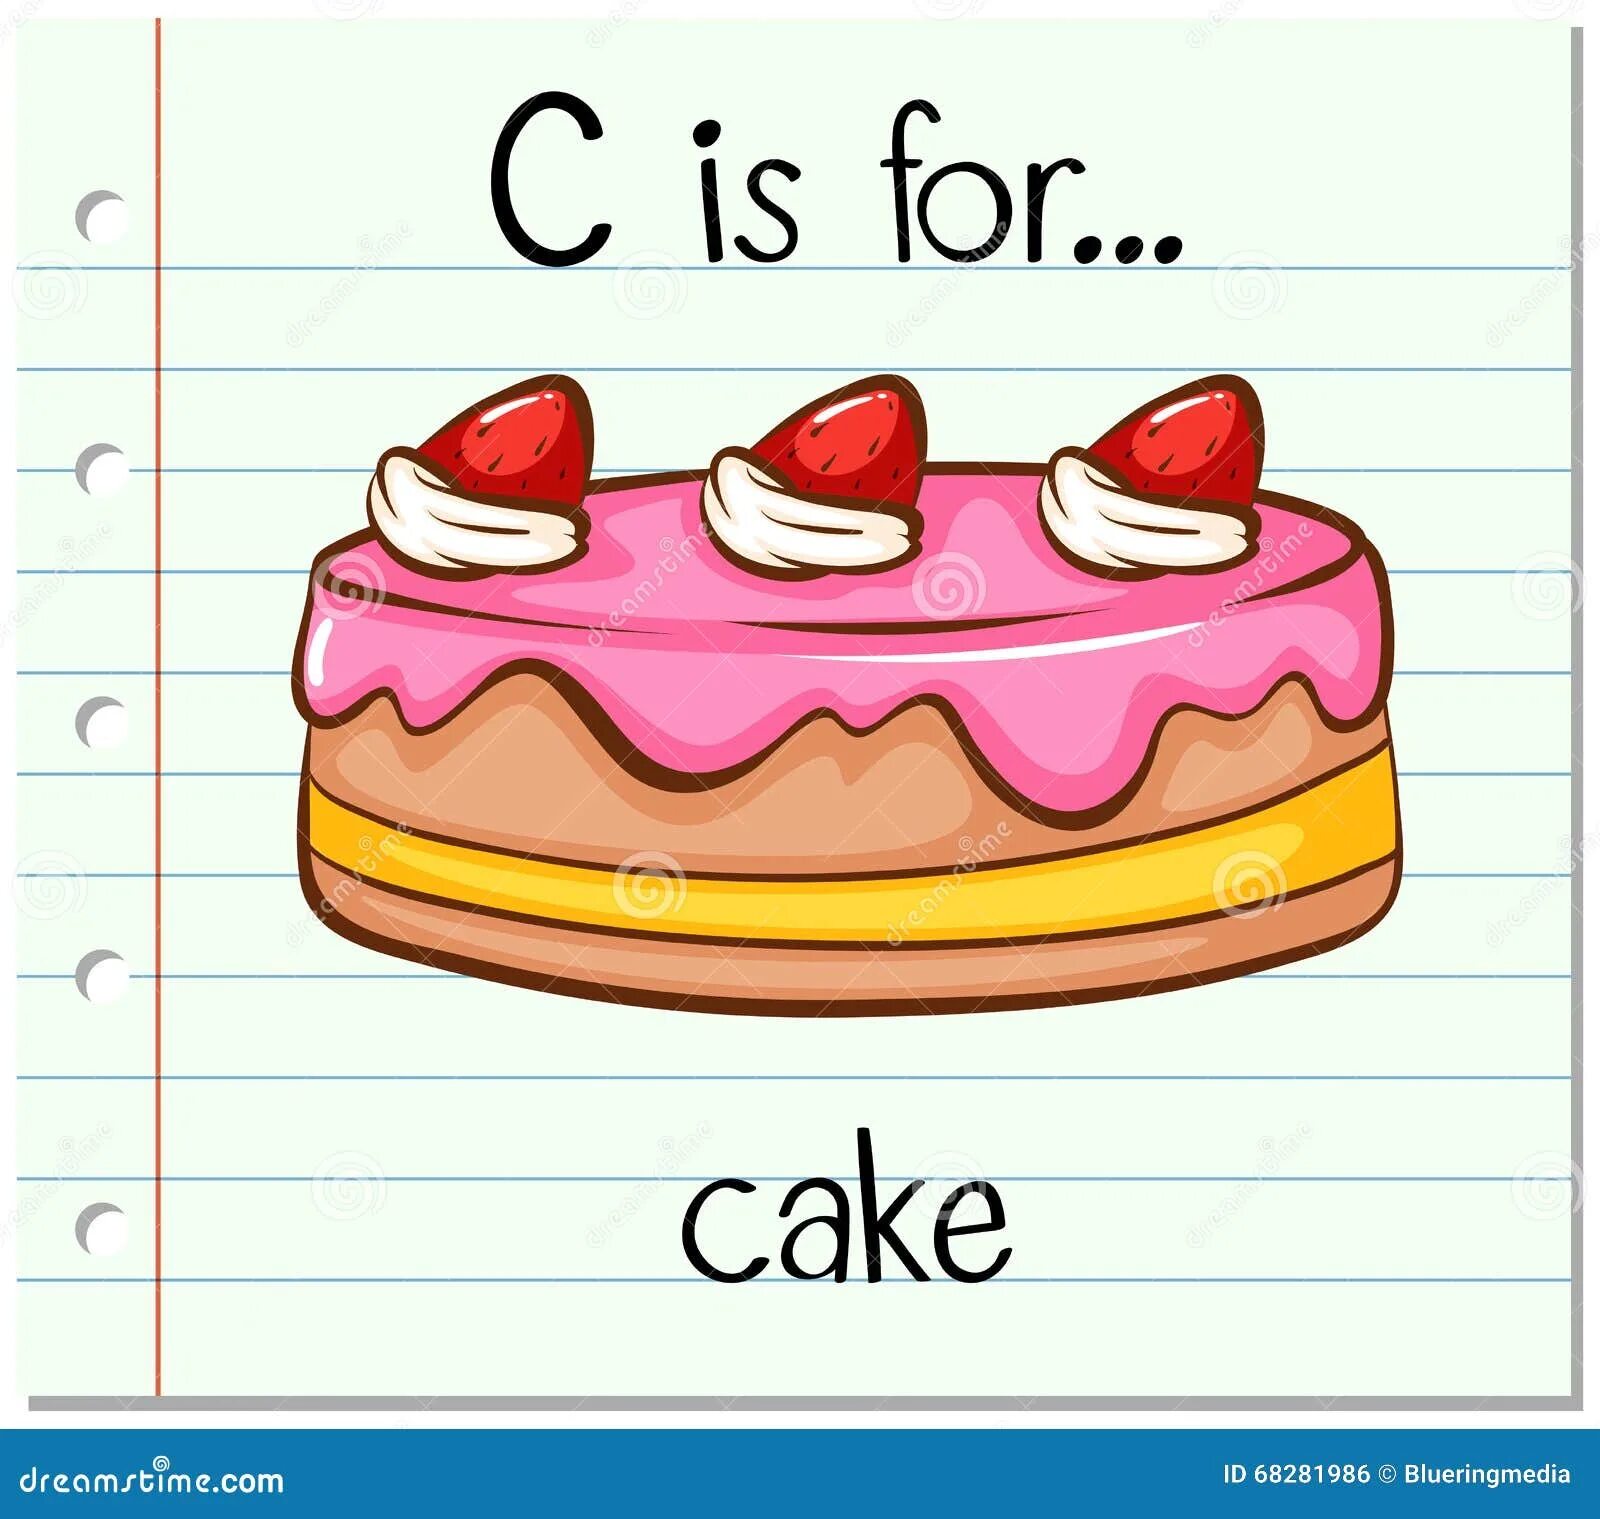 Английские слова cake. Cake карточка на английском. Картинка торт на английском. Карточки на английском для детей Cake. Торт для детей на английском языке.